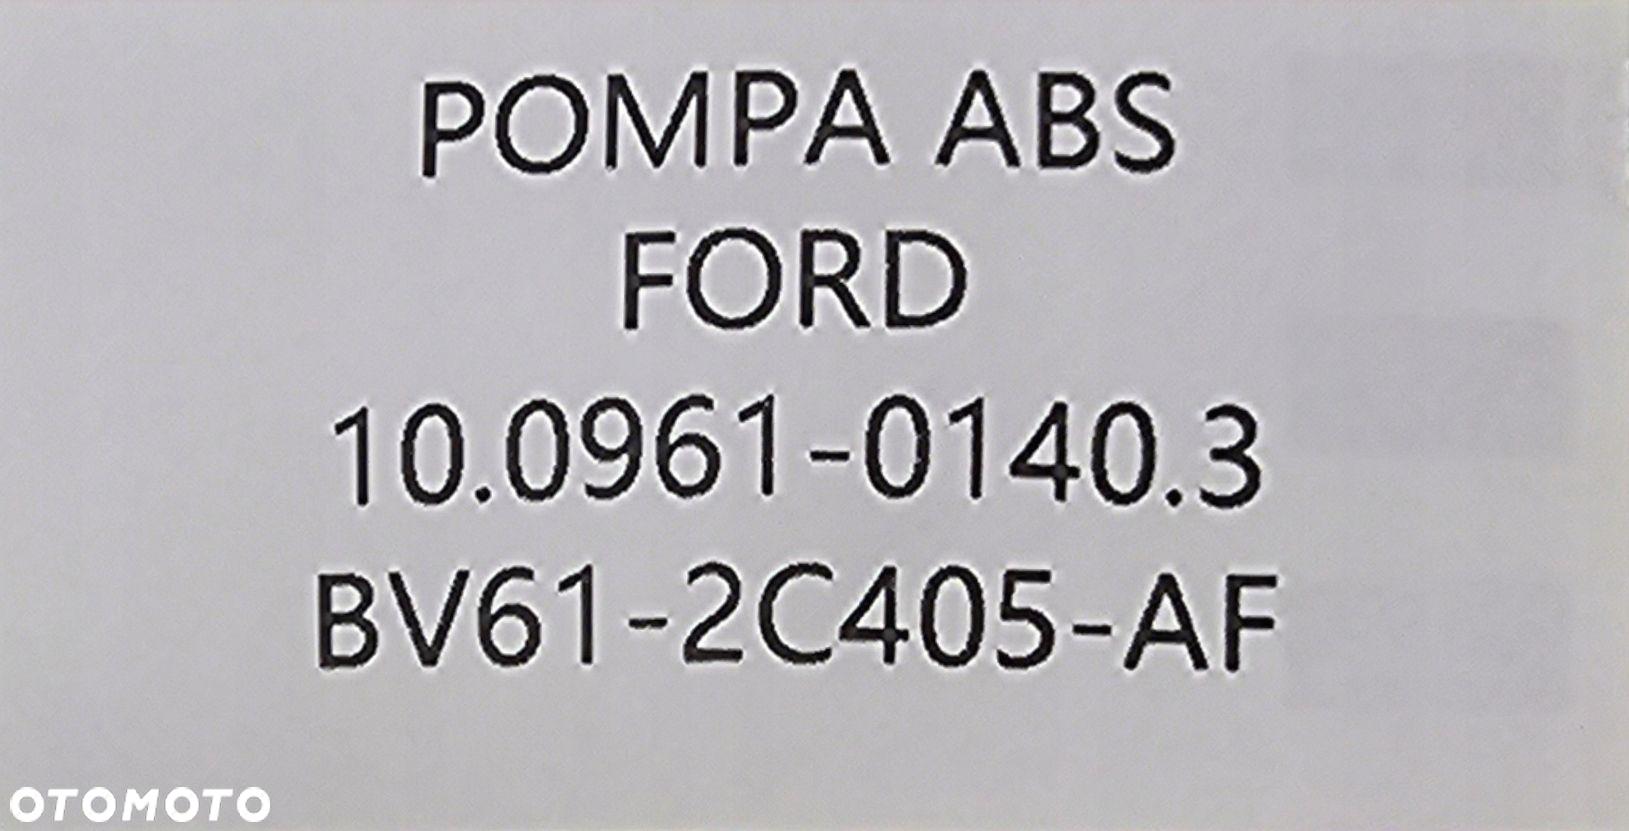 NOWA ORG POMPA ABS FORD FOCUS MK3 / C-MAX MK2 - BV61-2C405-AF - 7